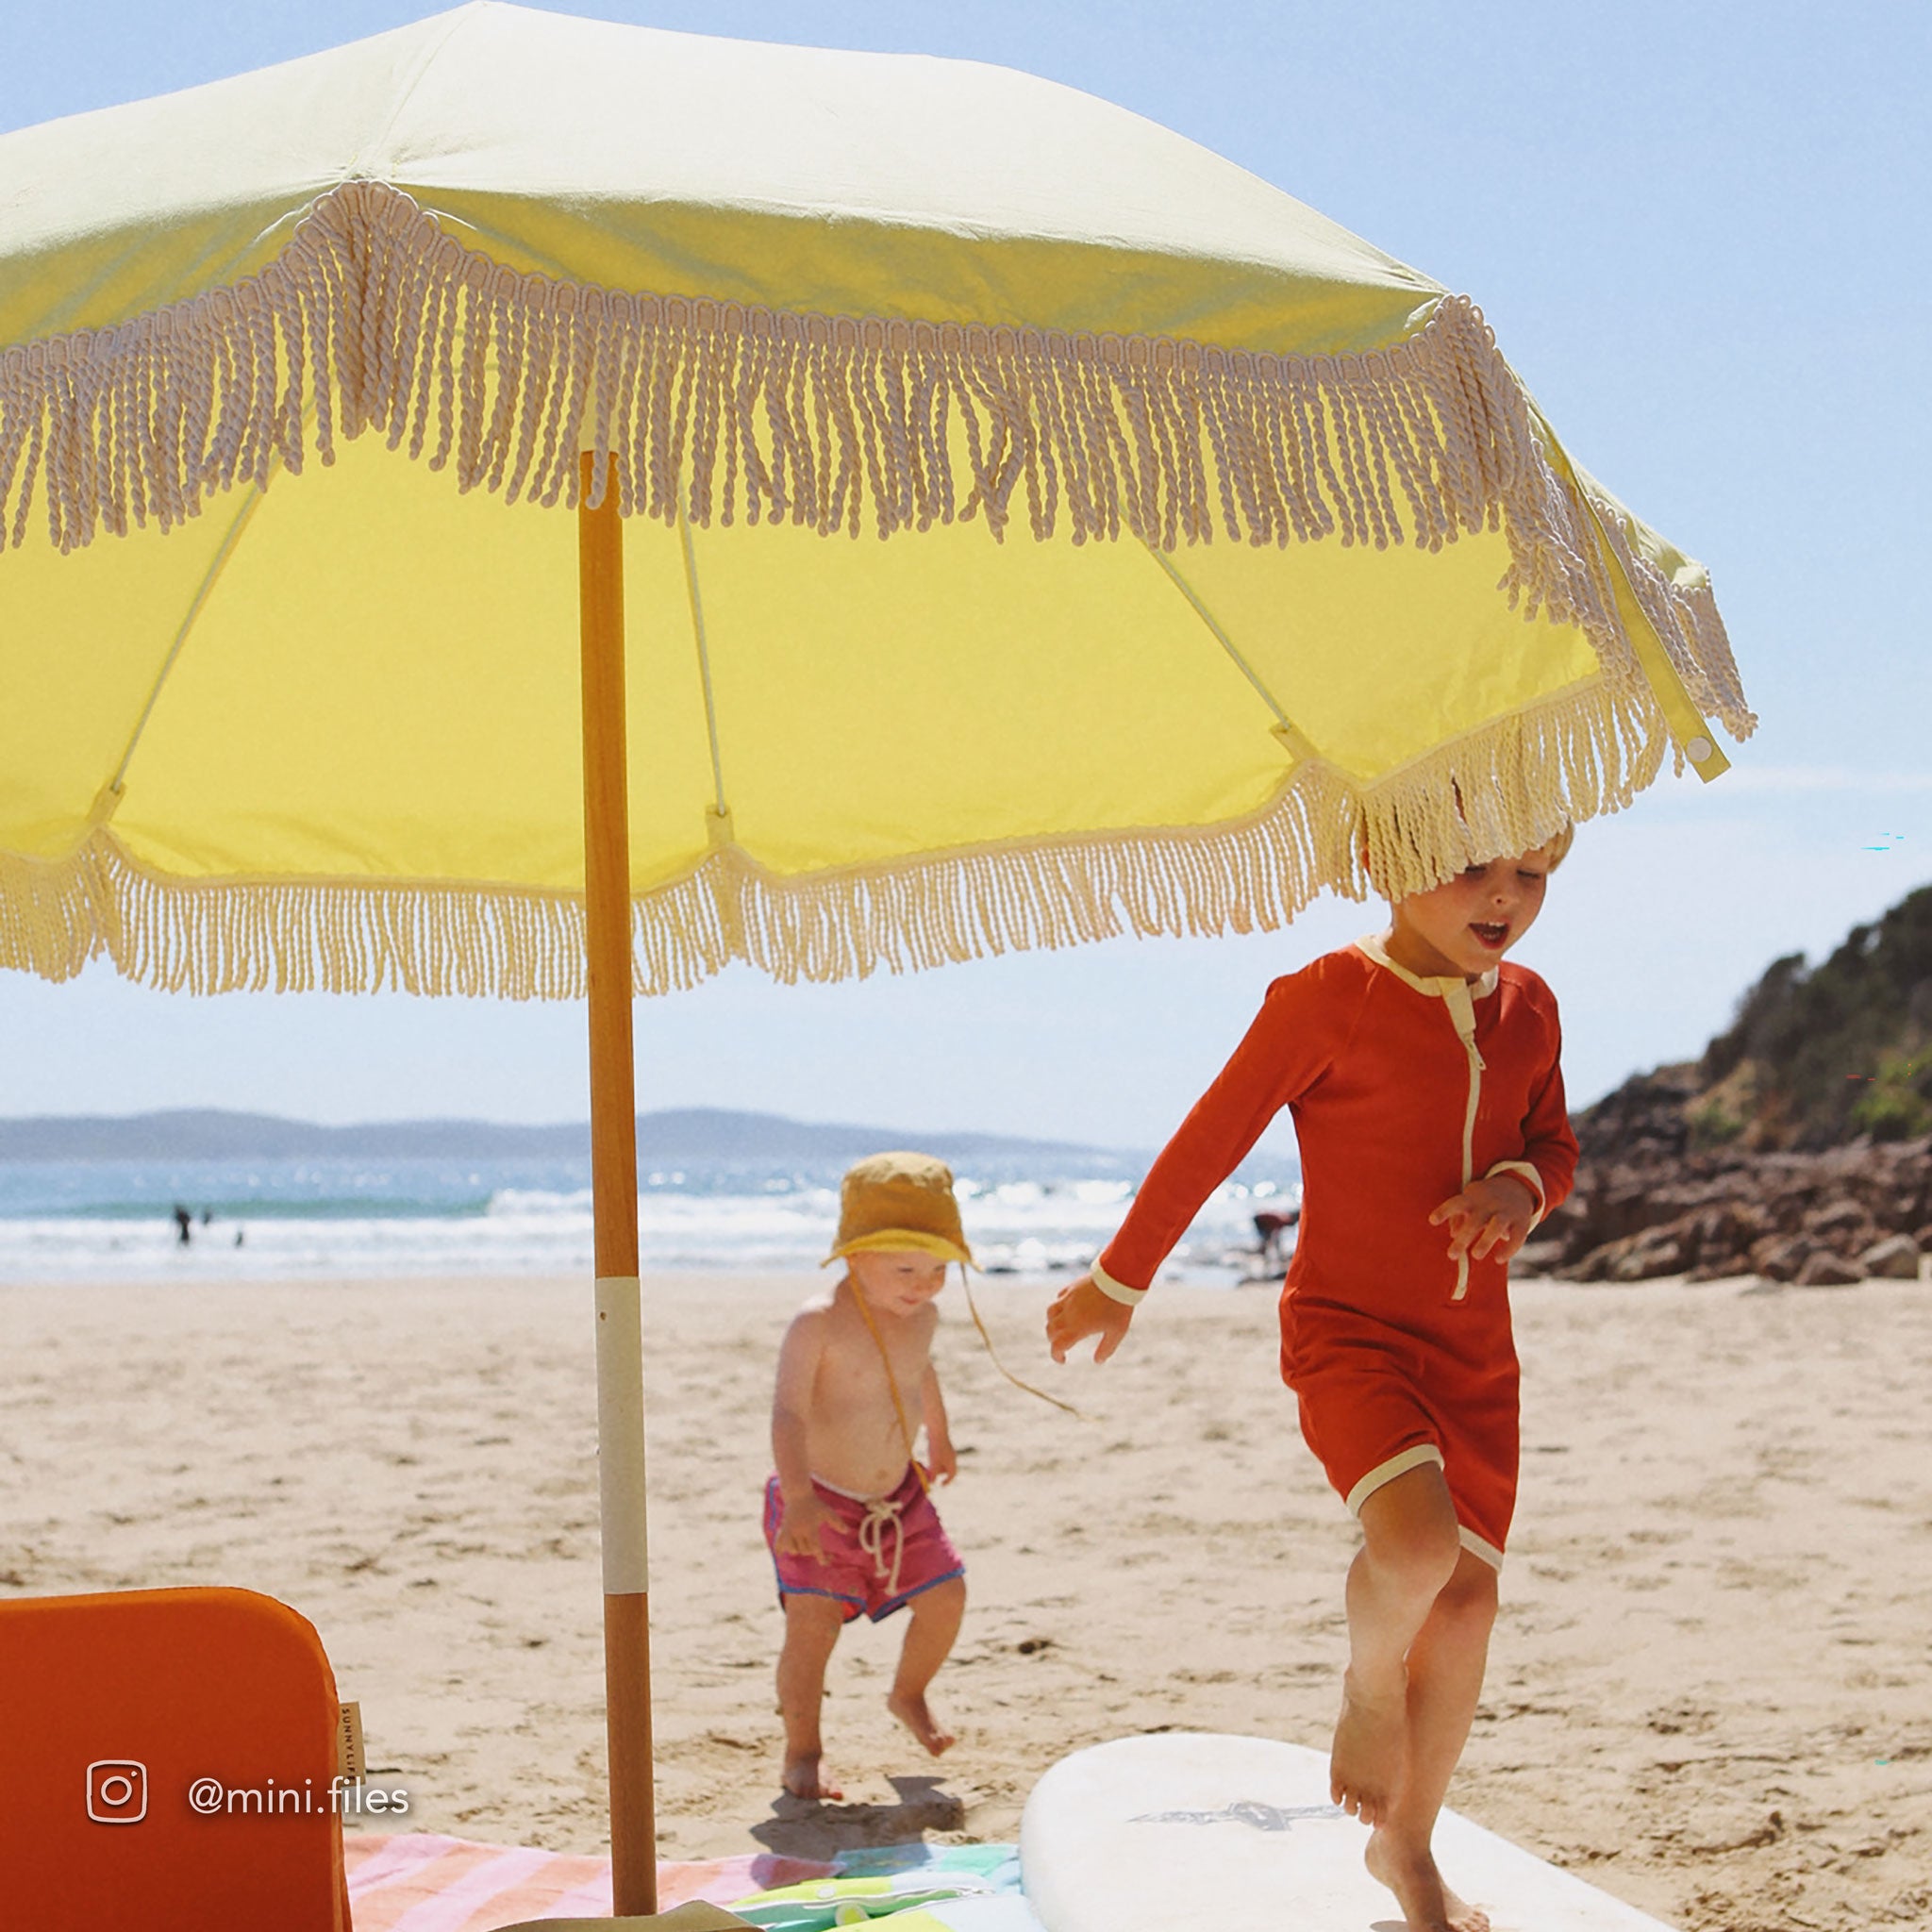 Luxe Beach Umbrella | Limoncello